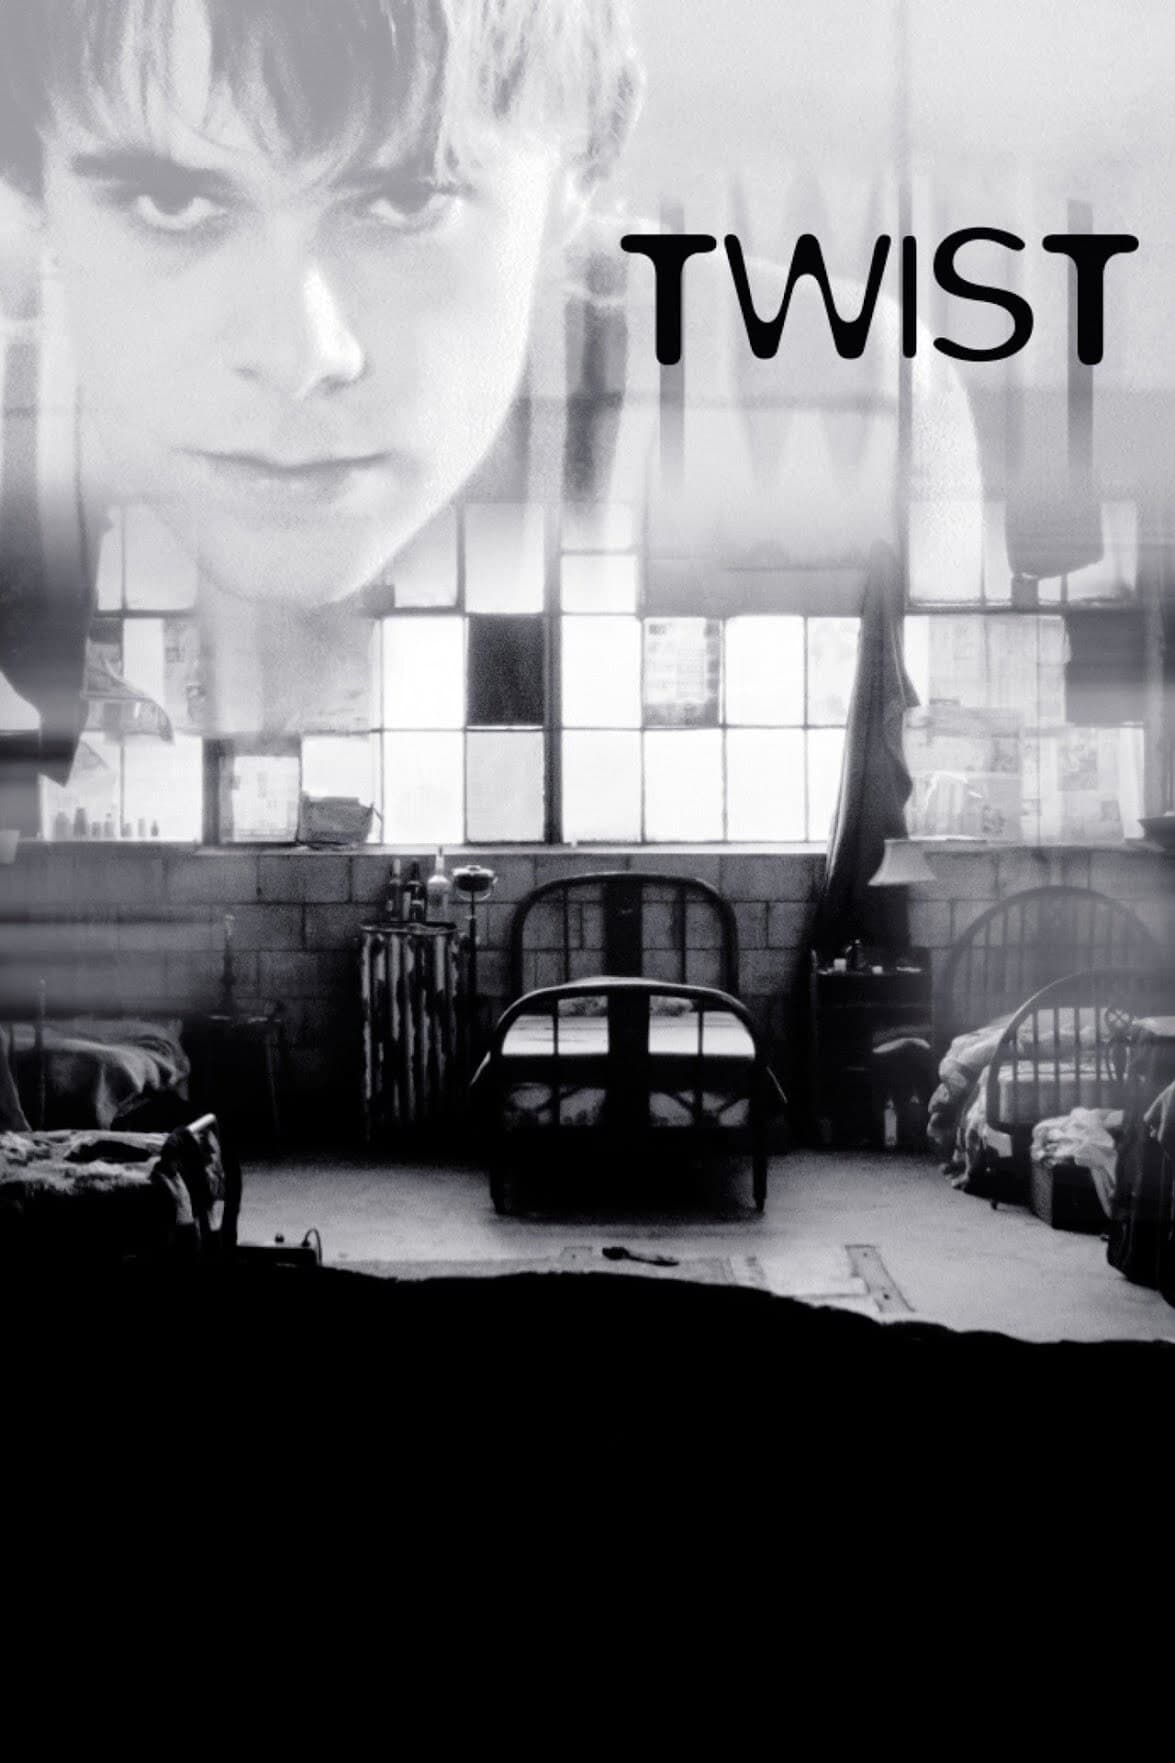 Twist (2003)